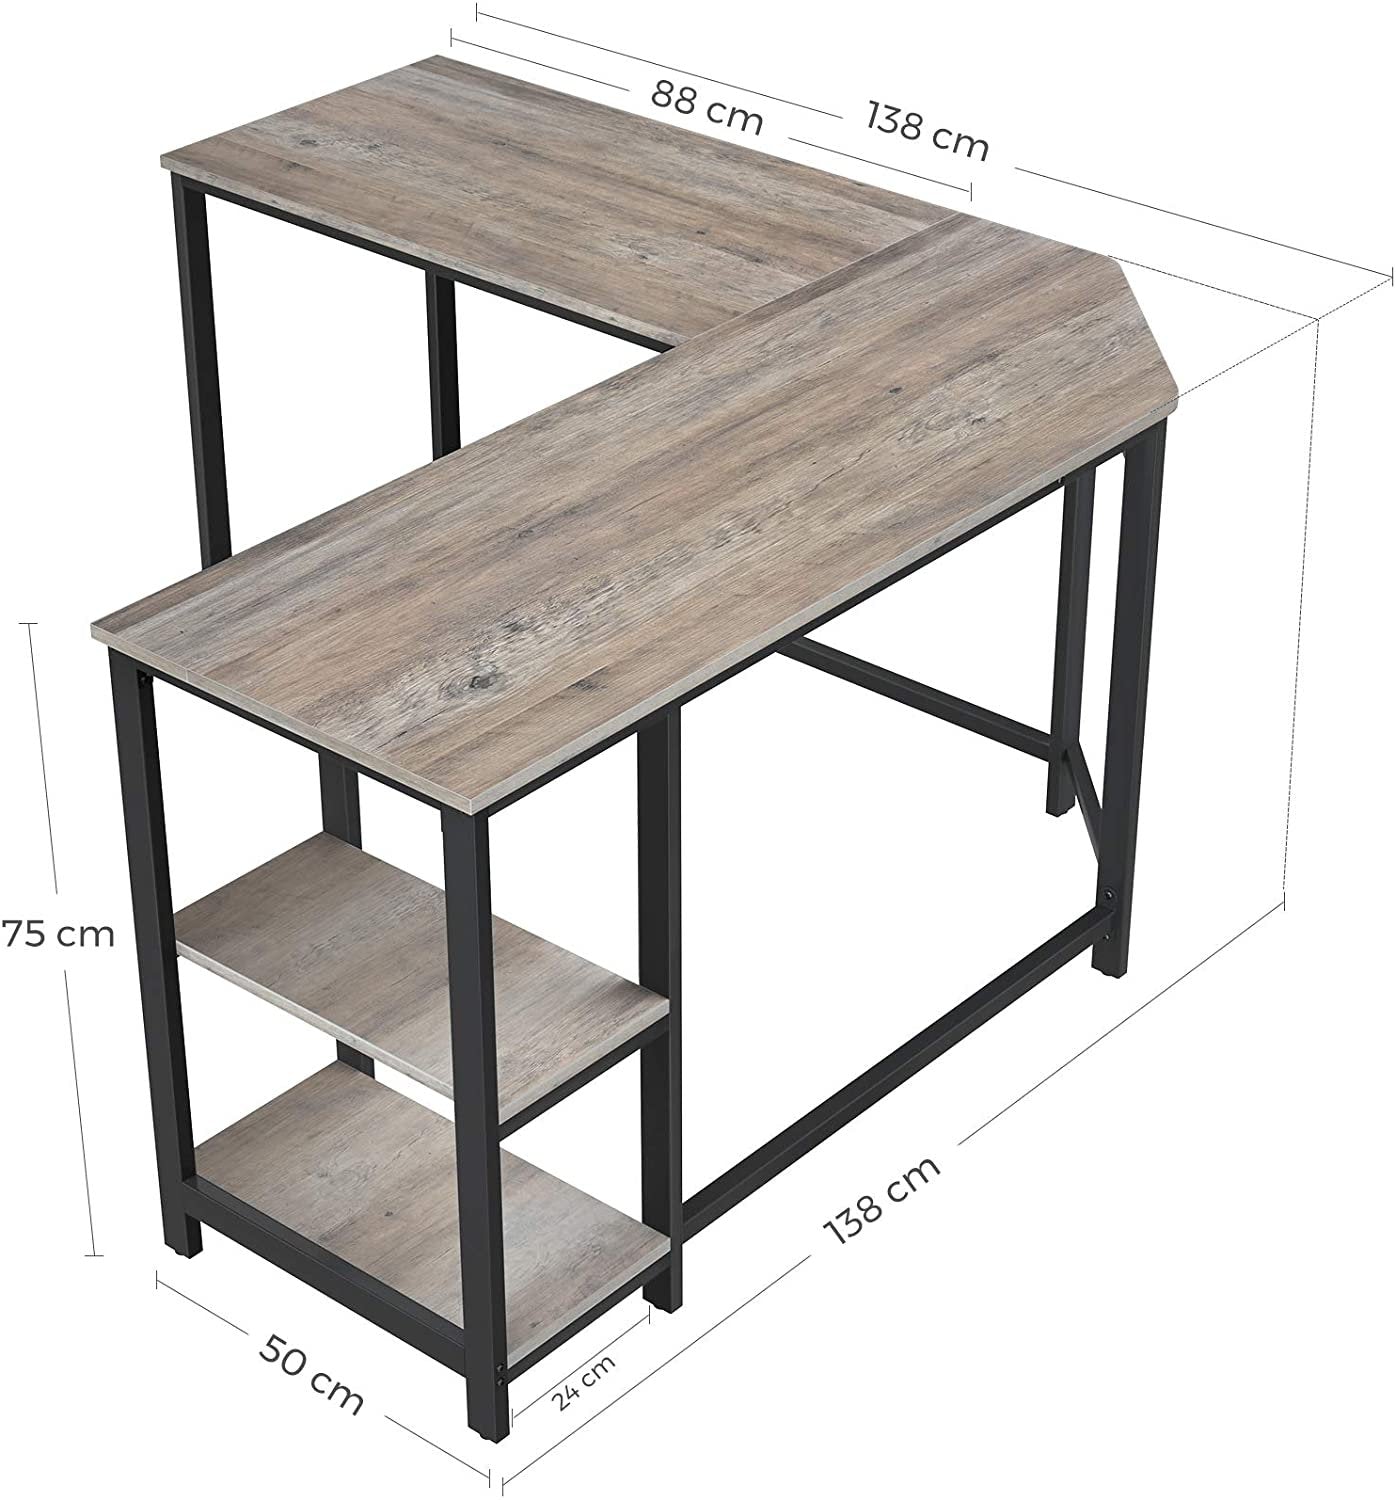 Rena Industrial Corner Desk with Shelves on RHS